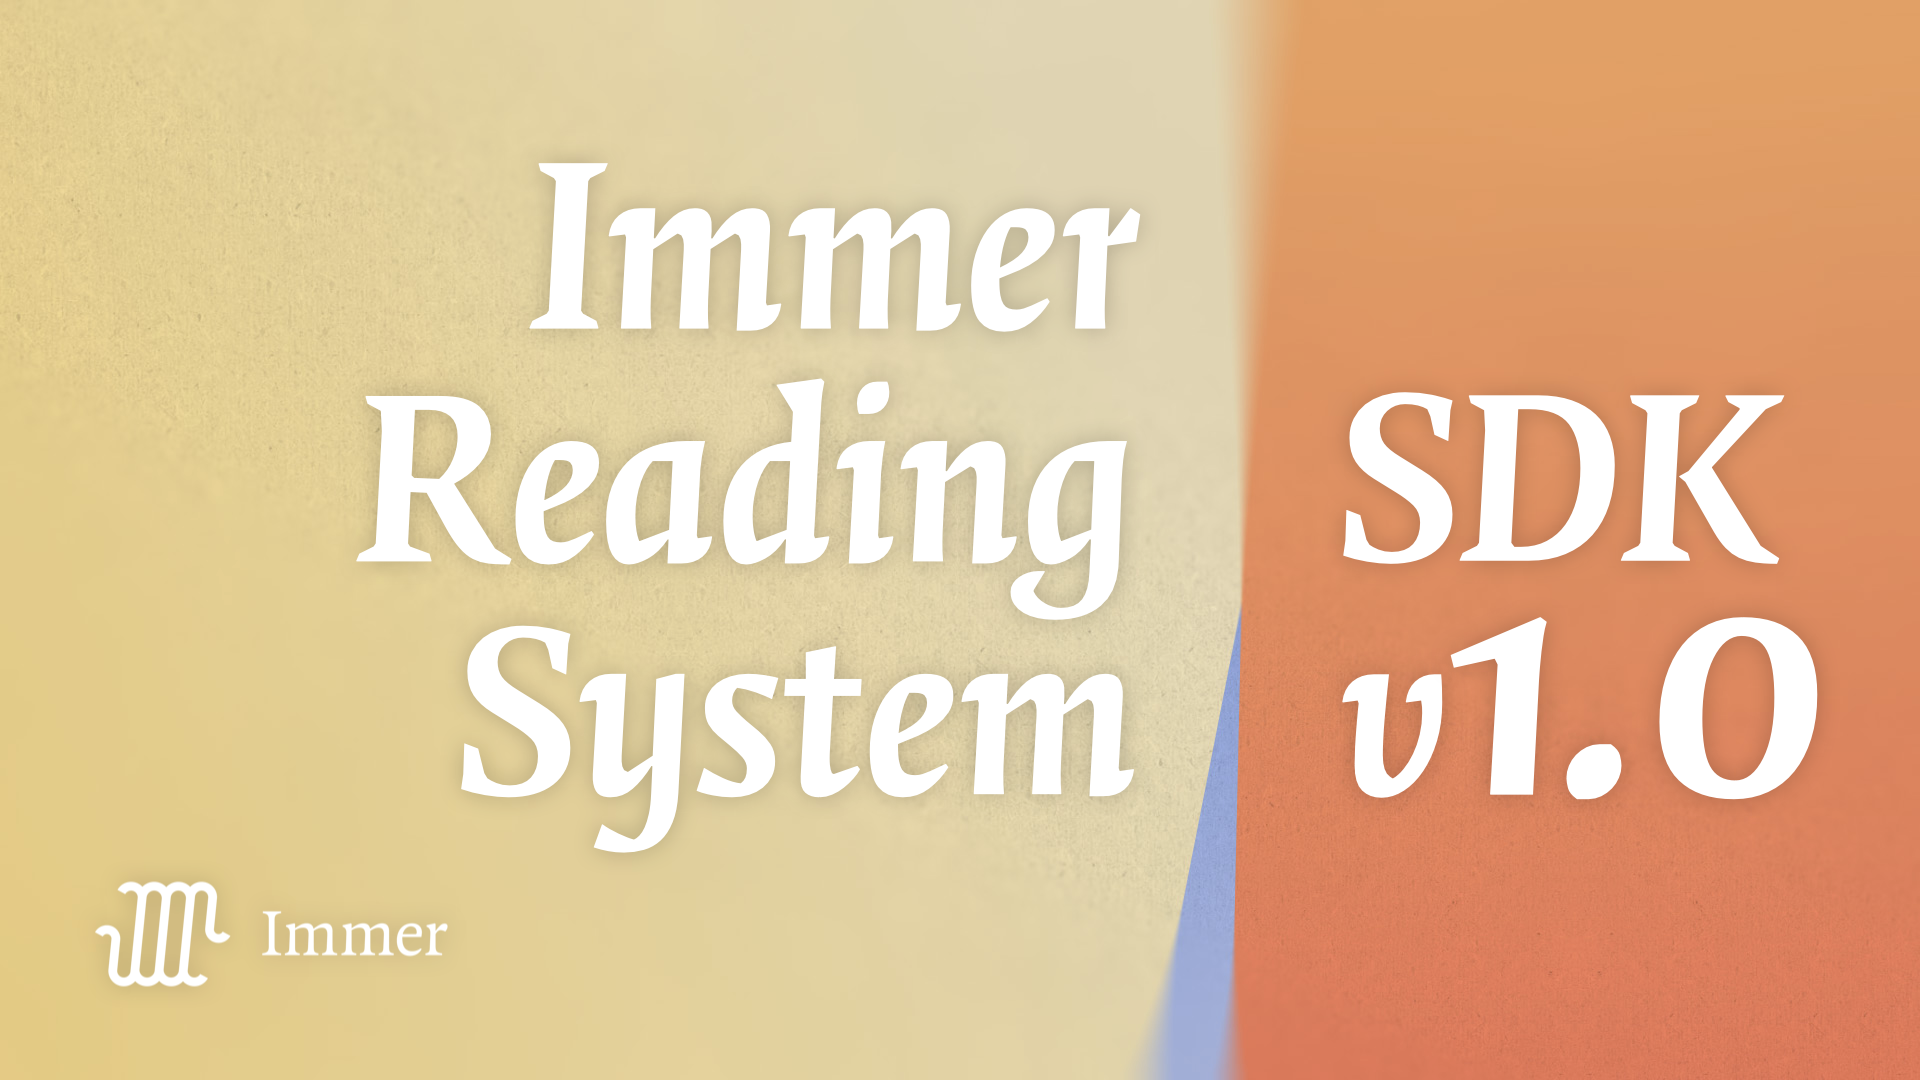 Nu beschikbaar: Immer Reading System SDK v1.0 voor leesplatformen